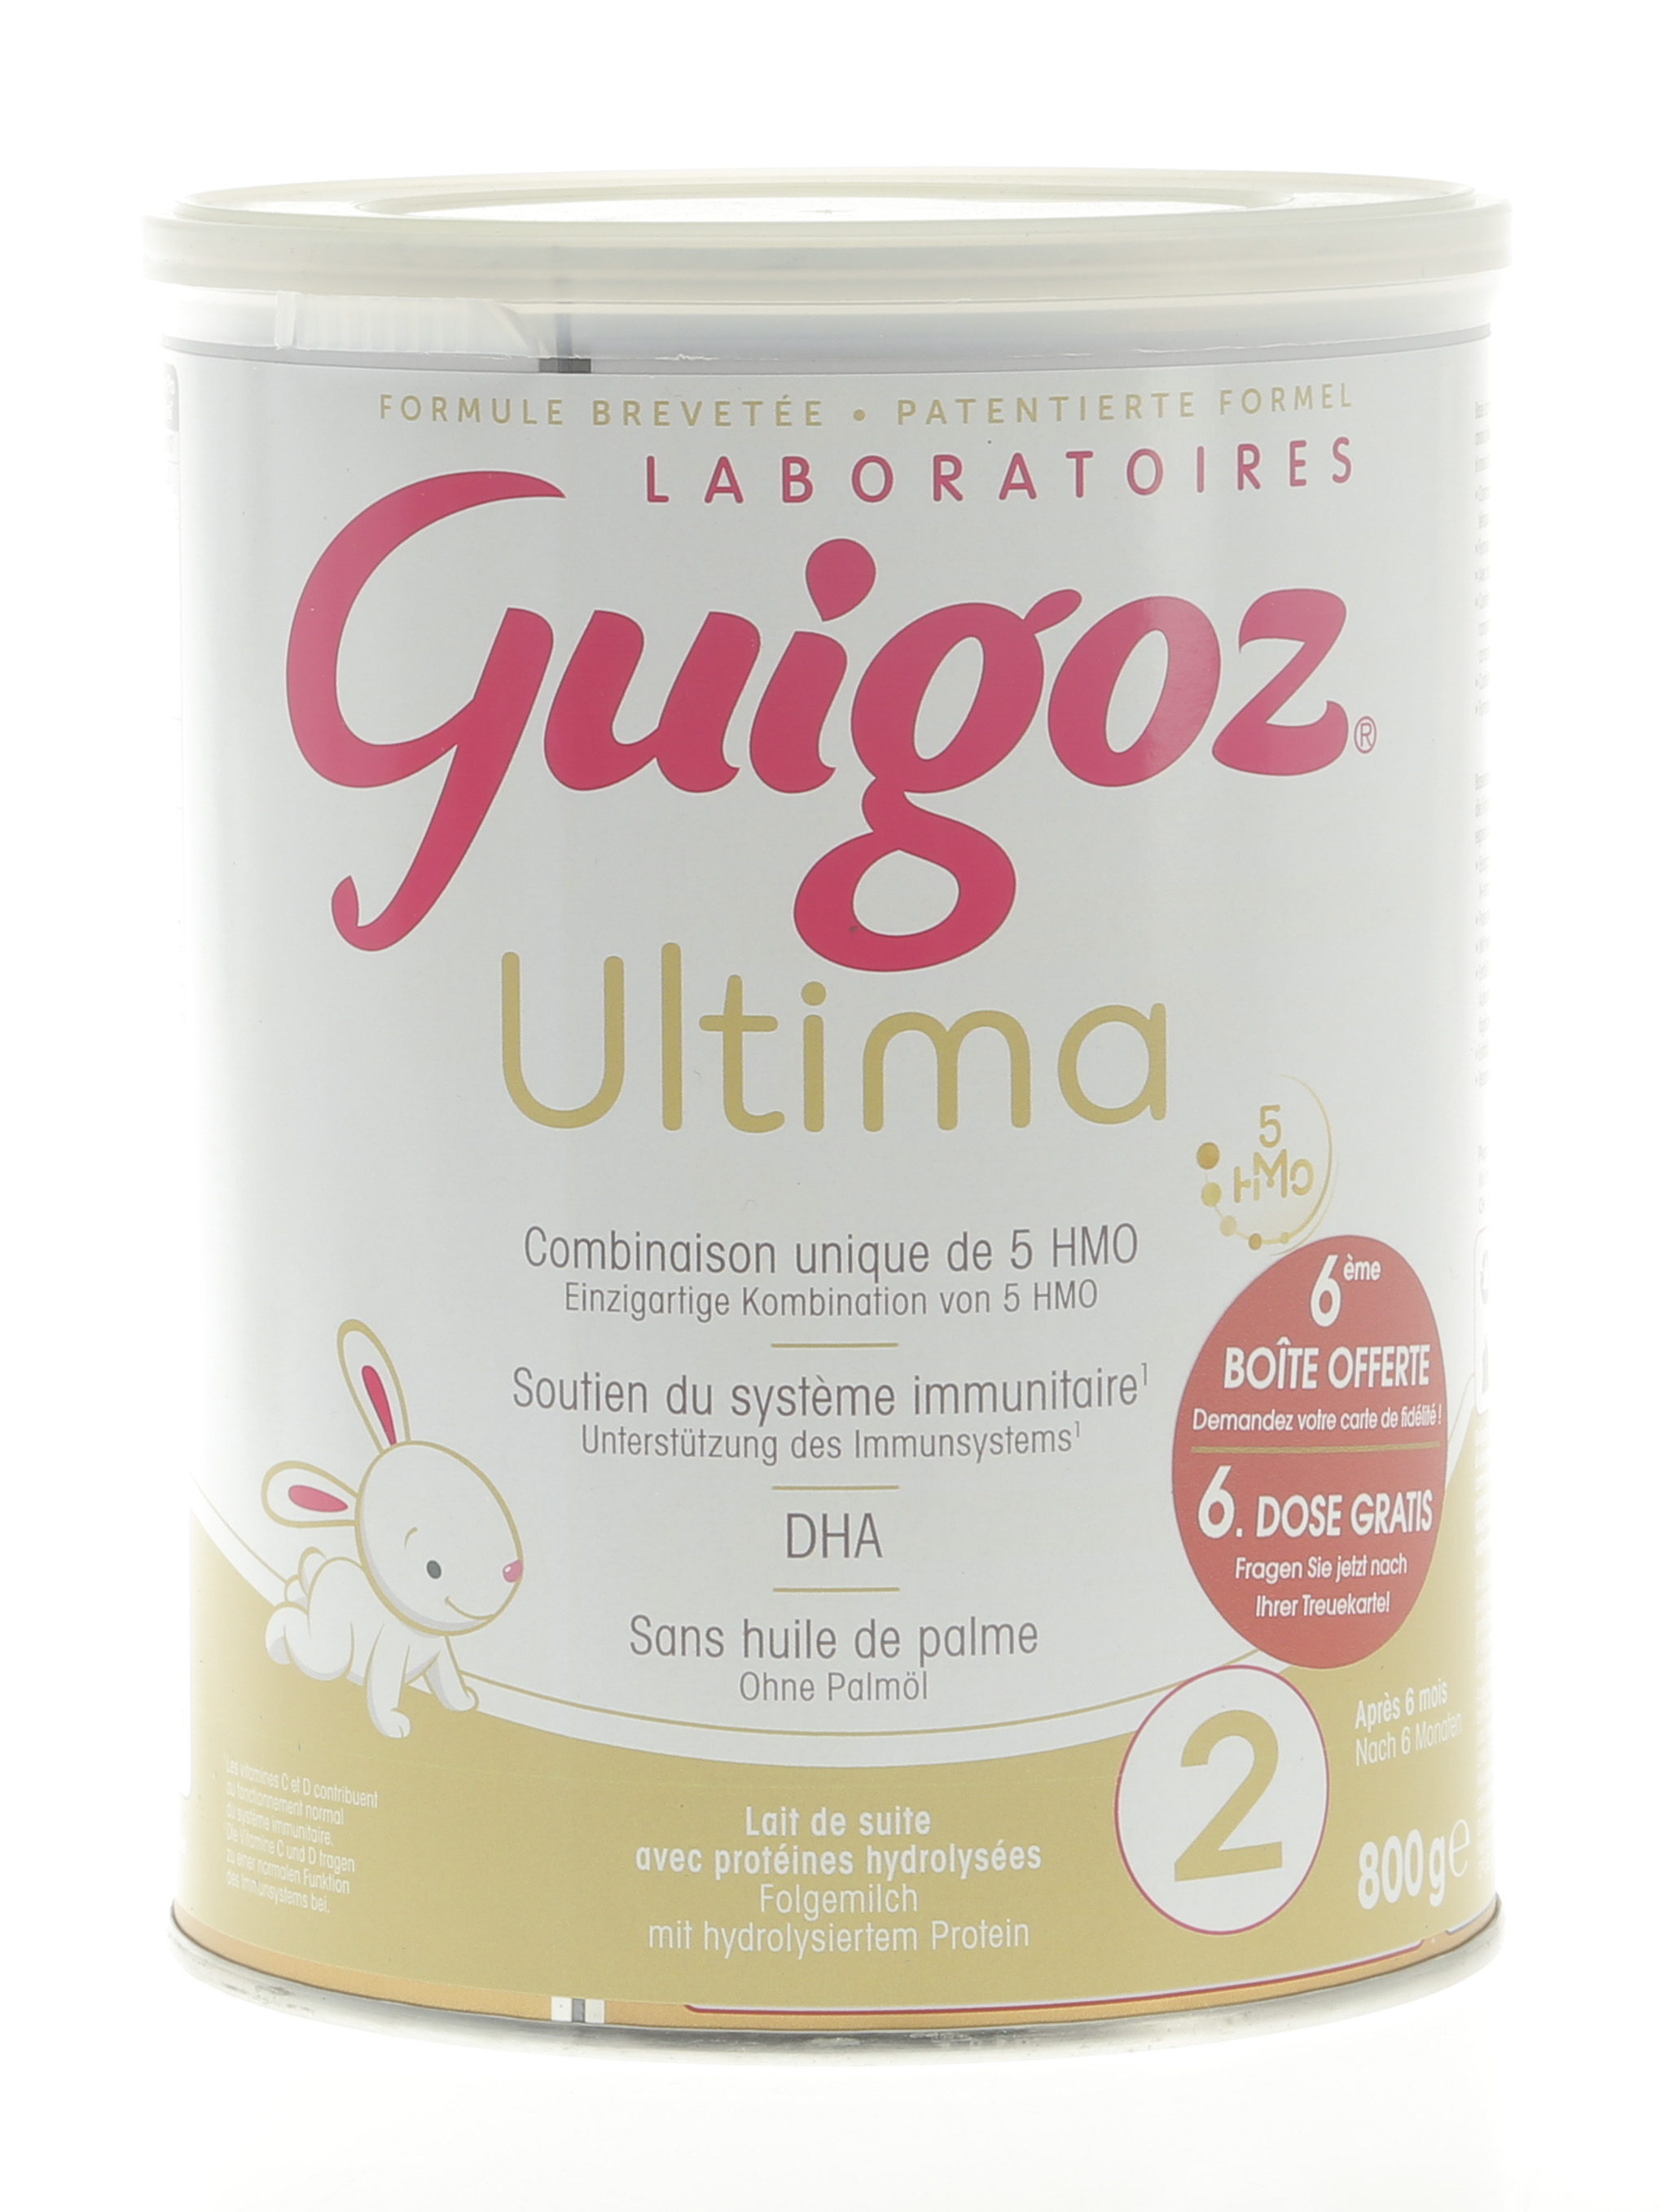 Guigoz Ultima 2 lait en poudre - 800g